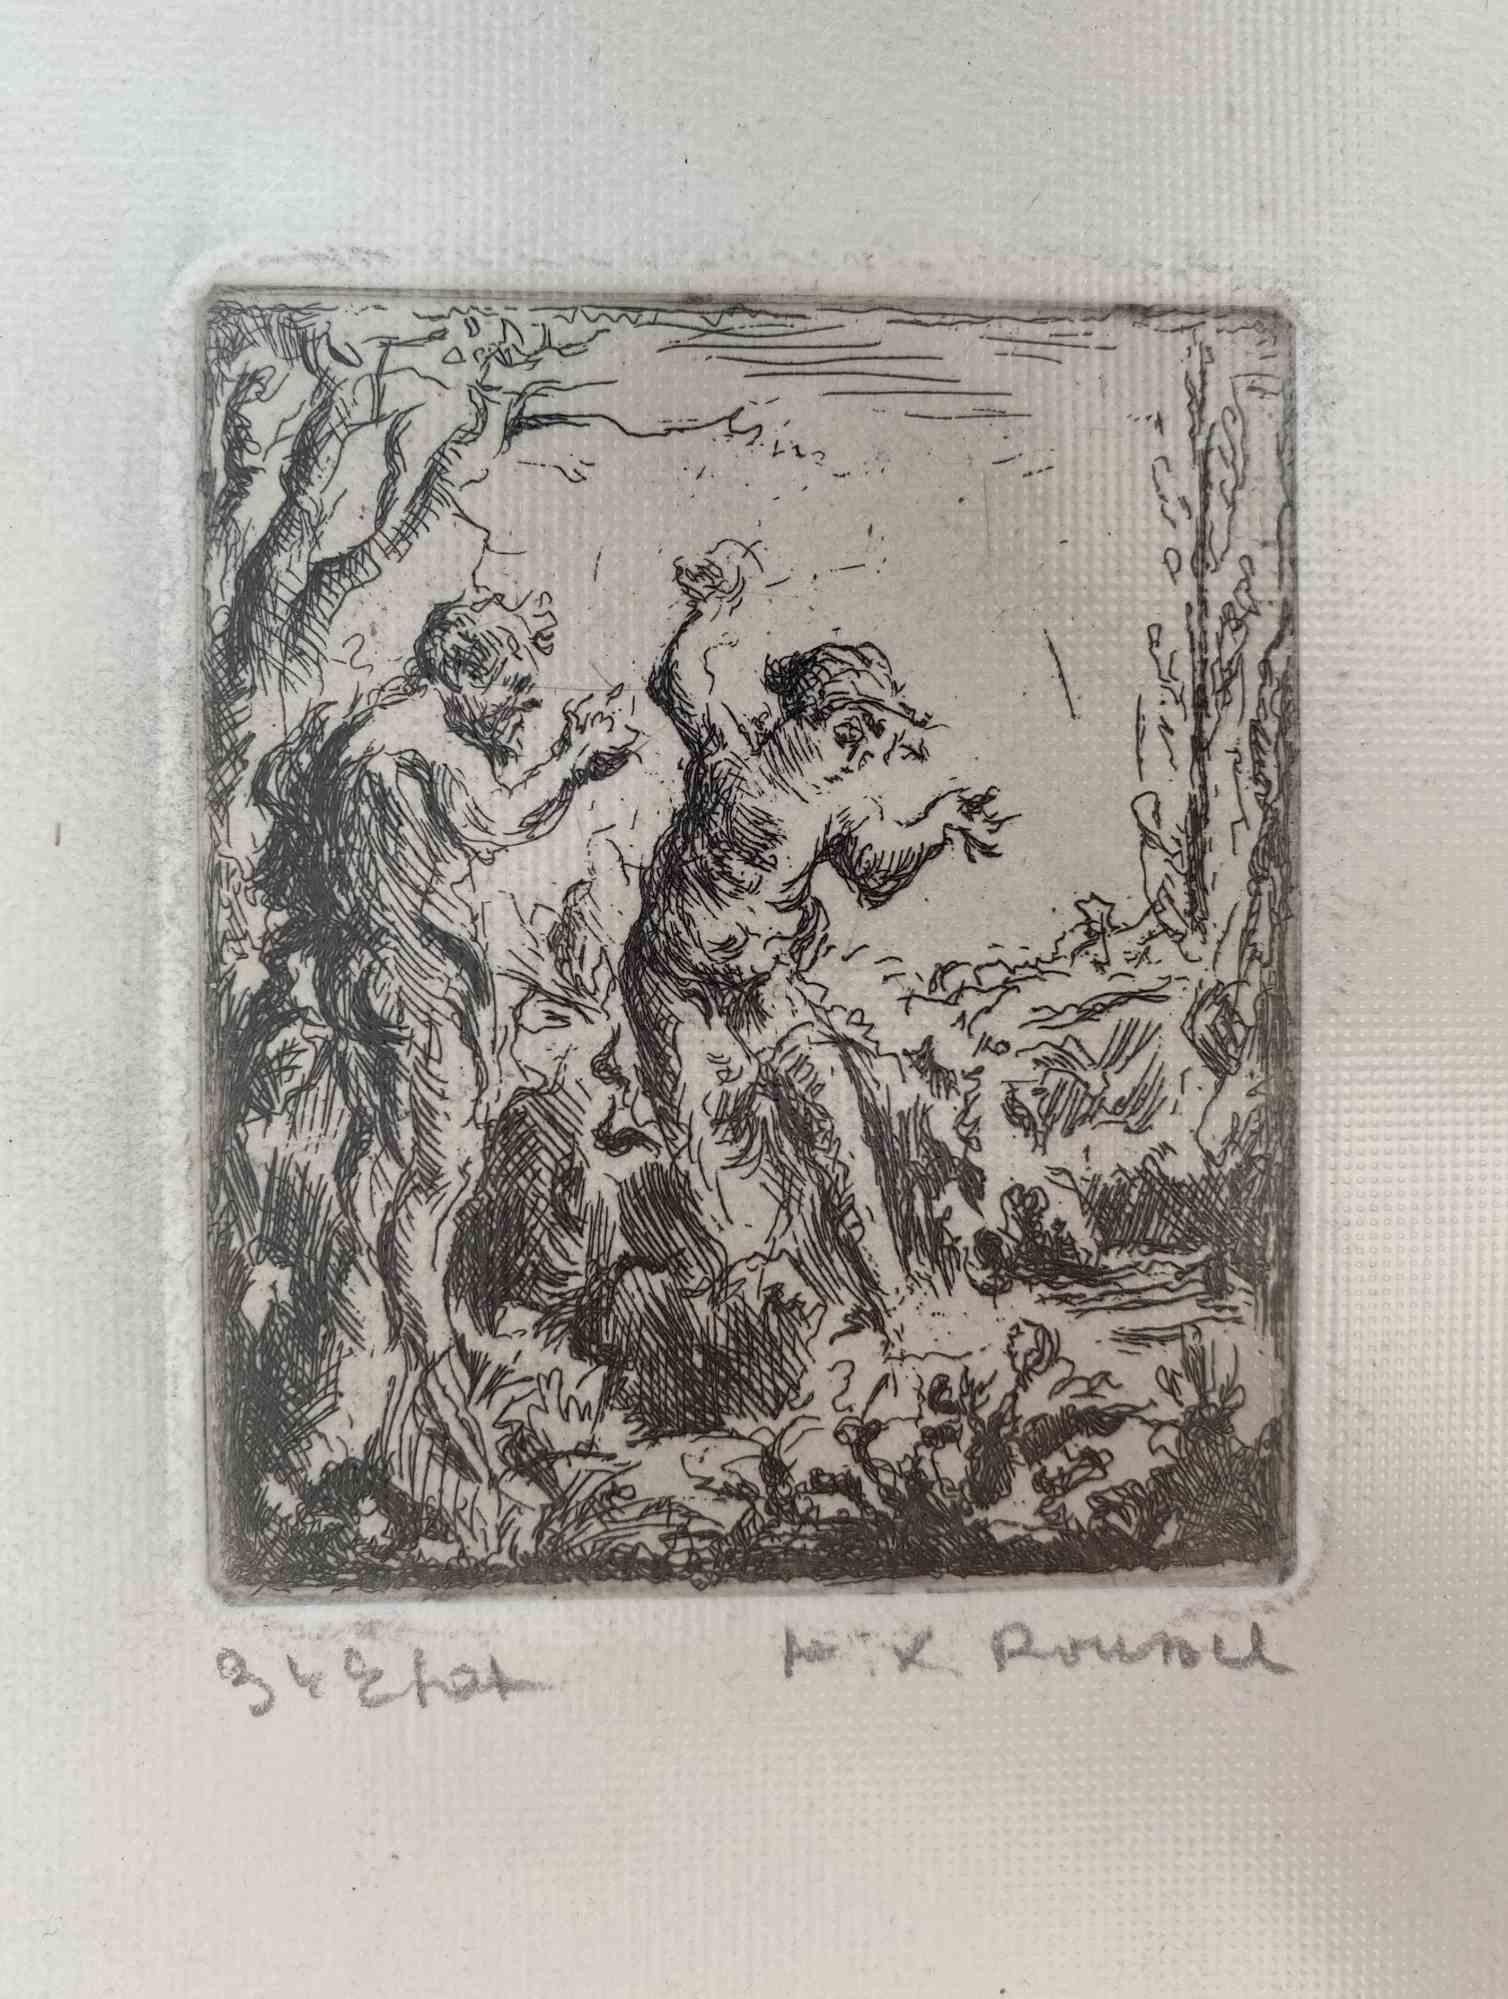 Nu dans les bois est une oeuvre originale de gravure à l'eau forte sur papier couleur ivoire réalisée par Ker-Xavier Roussel en 1920 environ.

Signé à la main dans la marge inférieure droite. 

Très bonnes conditions.

Ker-Xavier Roussel